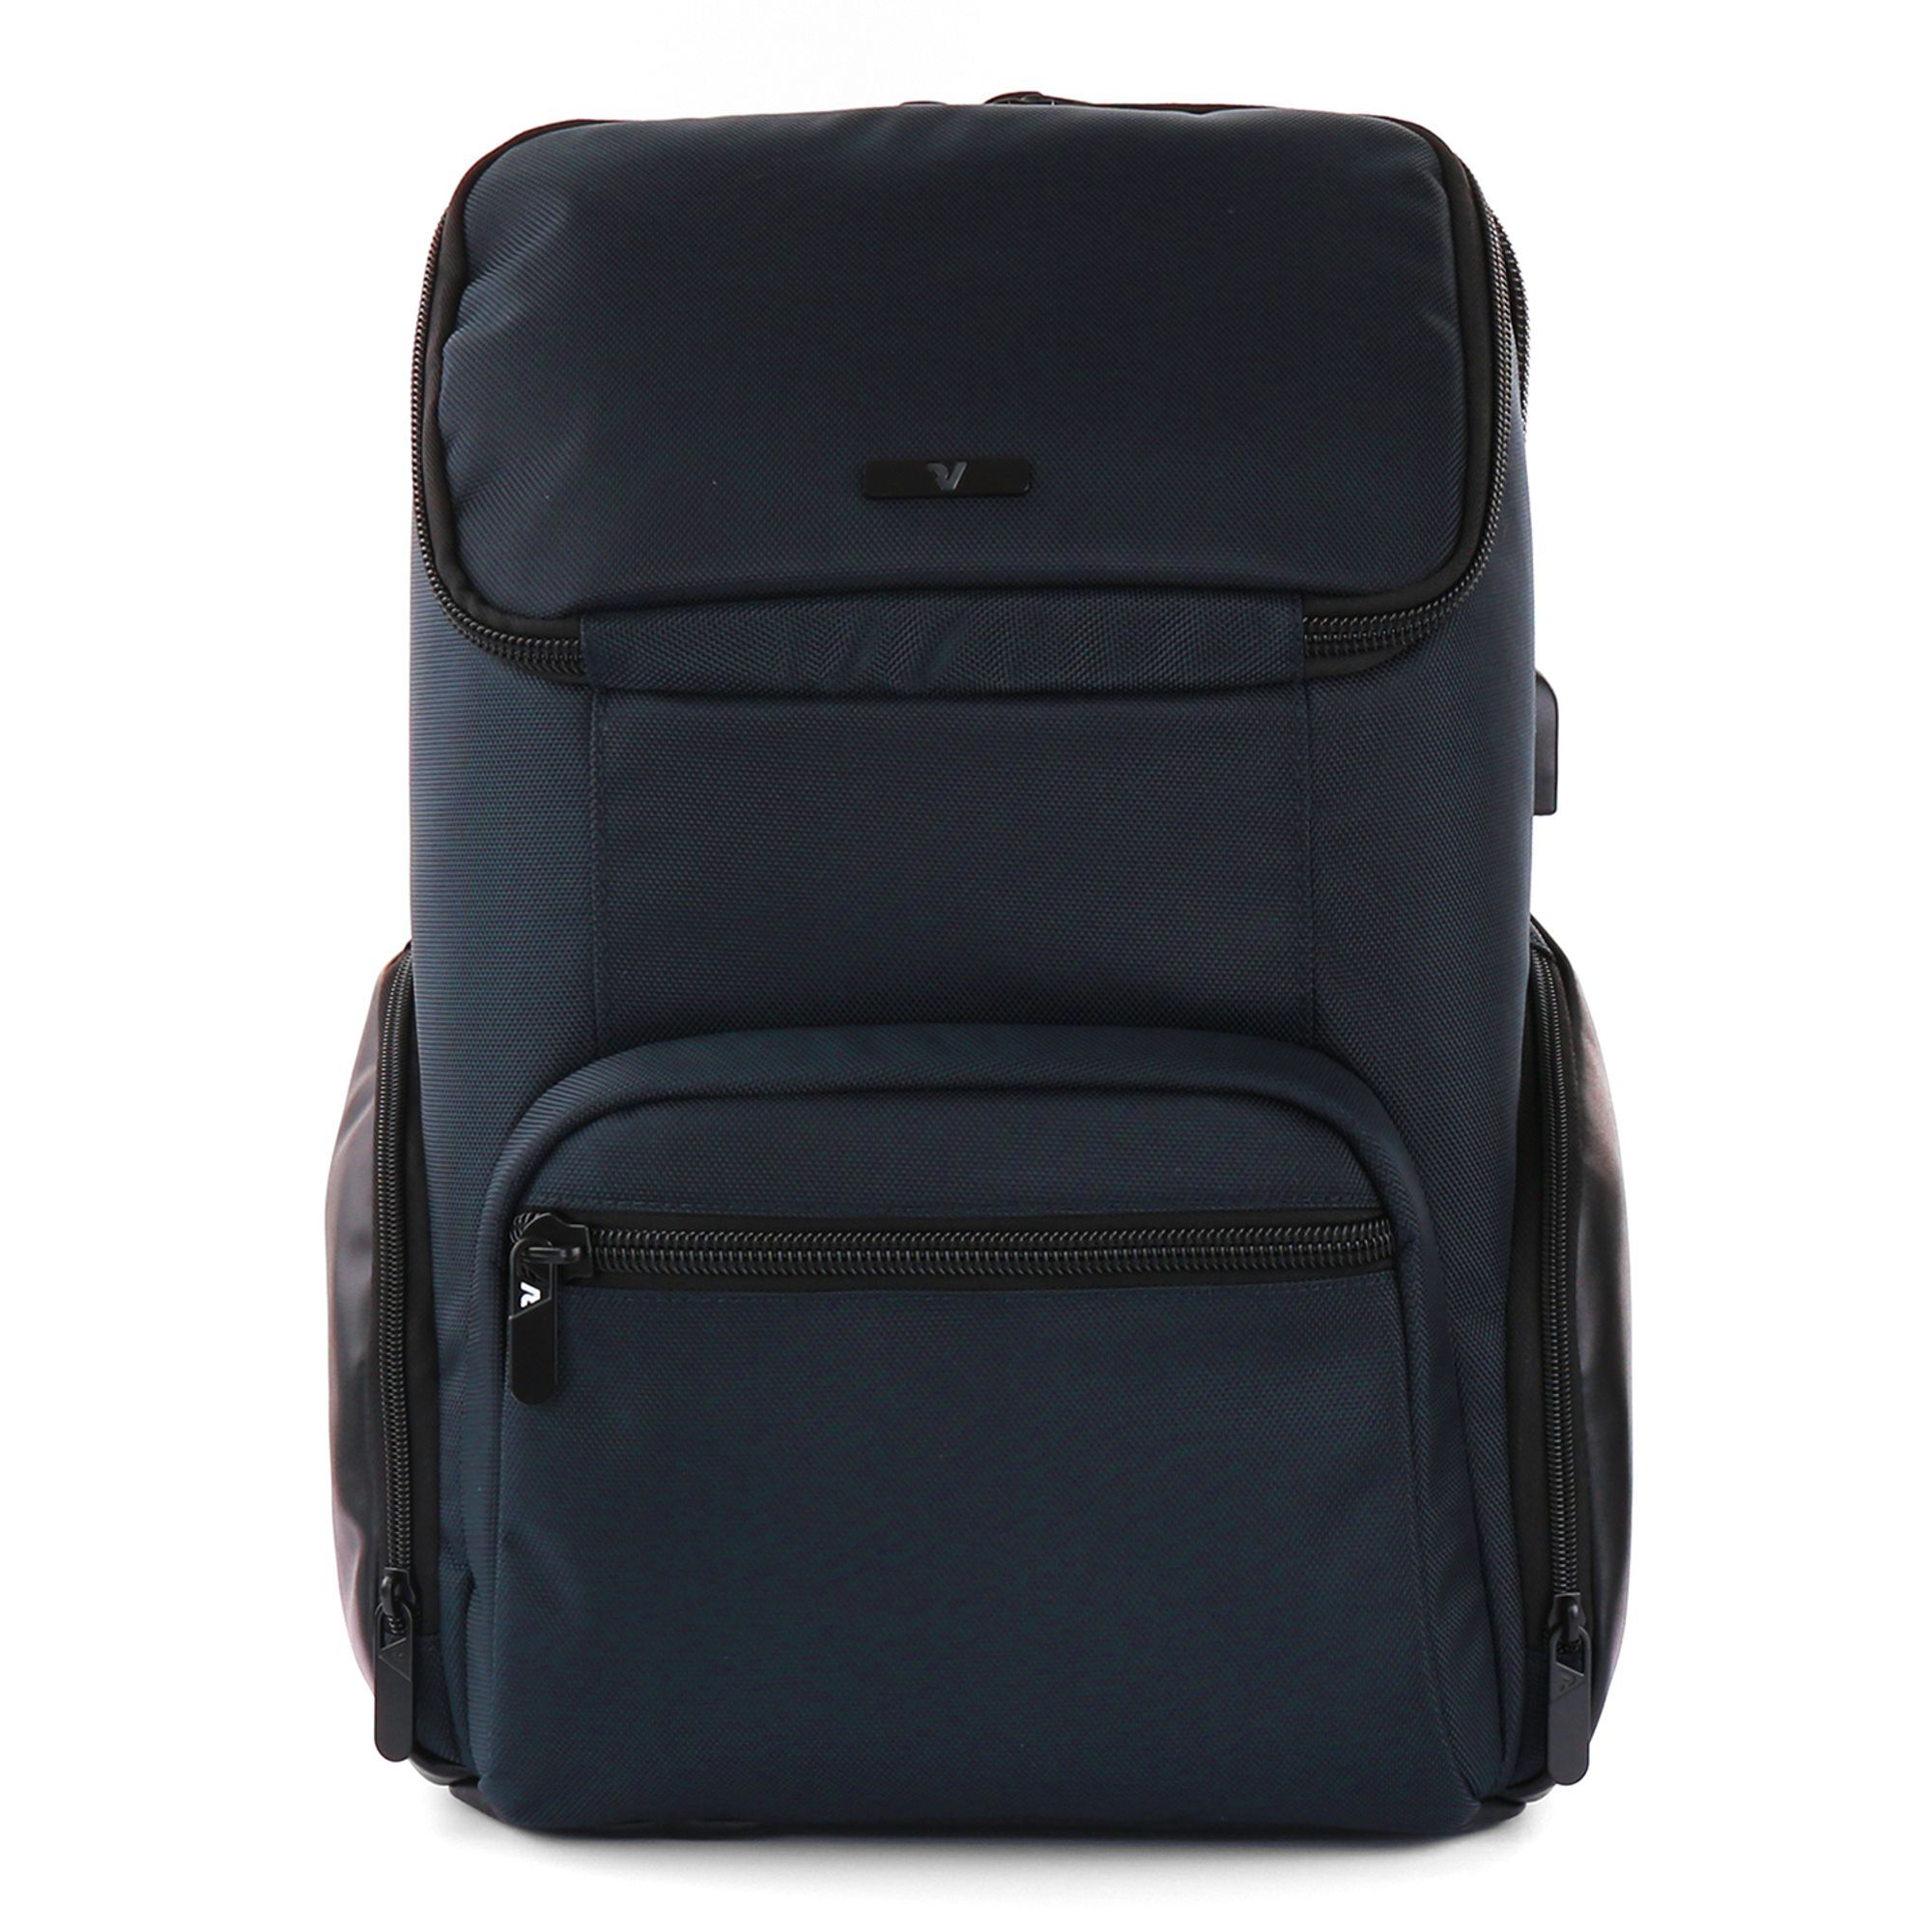 Рюкзак Roncato Agency 43 cm Laptopfach, темно синий рюкзак ogio bandit pro 51 cm laptopfach темно синий